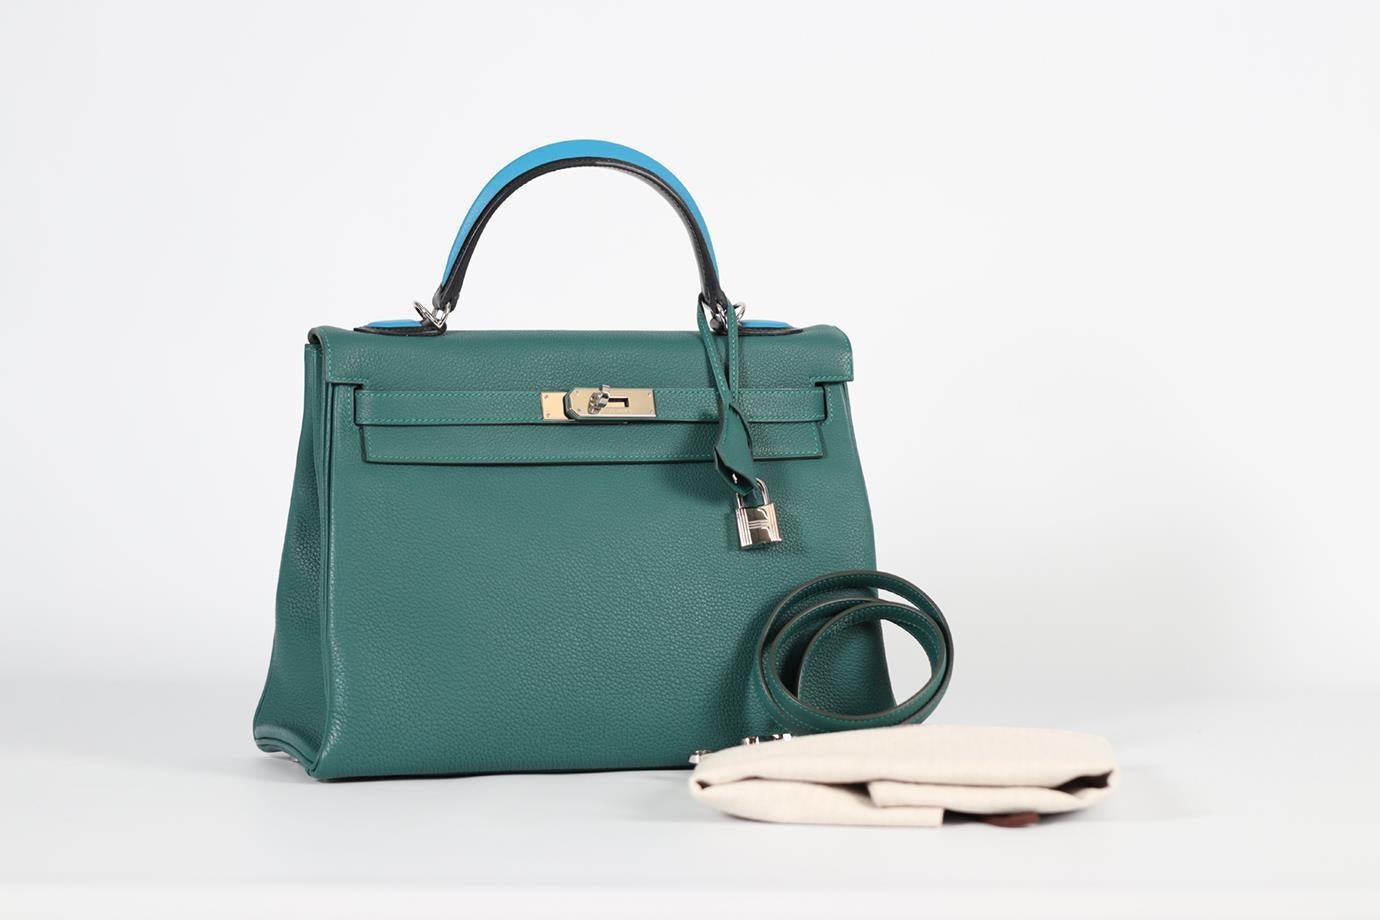 Hermès 2017 Kelly Au Pas 32cm Togo Leather Bag For Sale 8